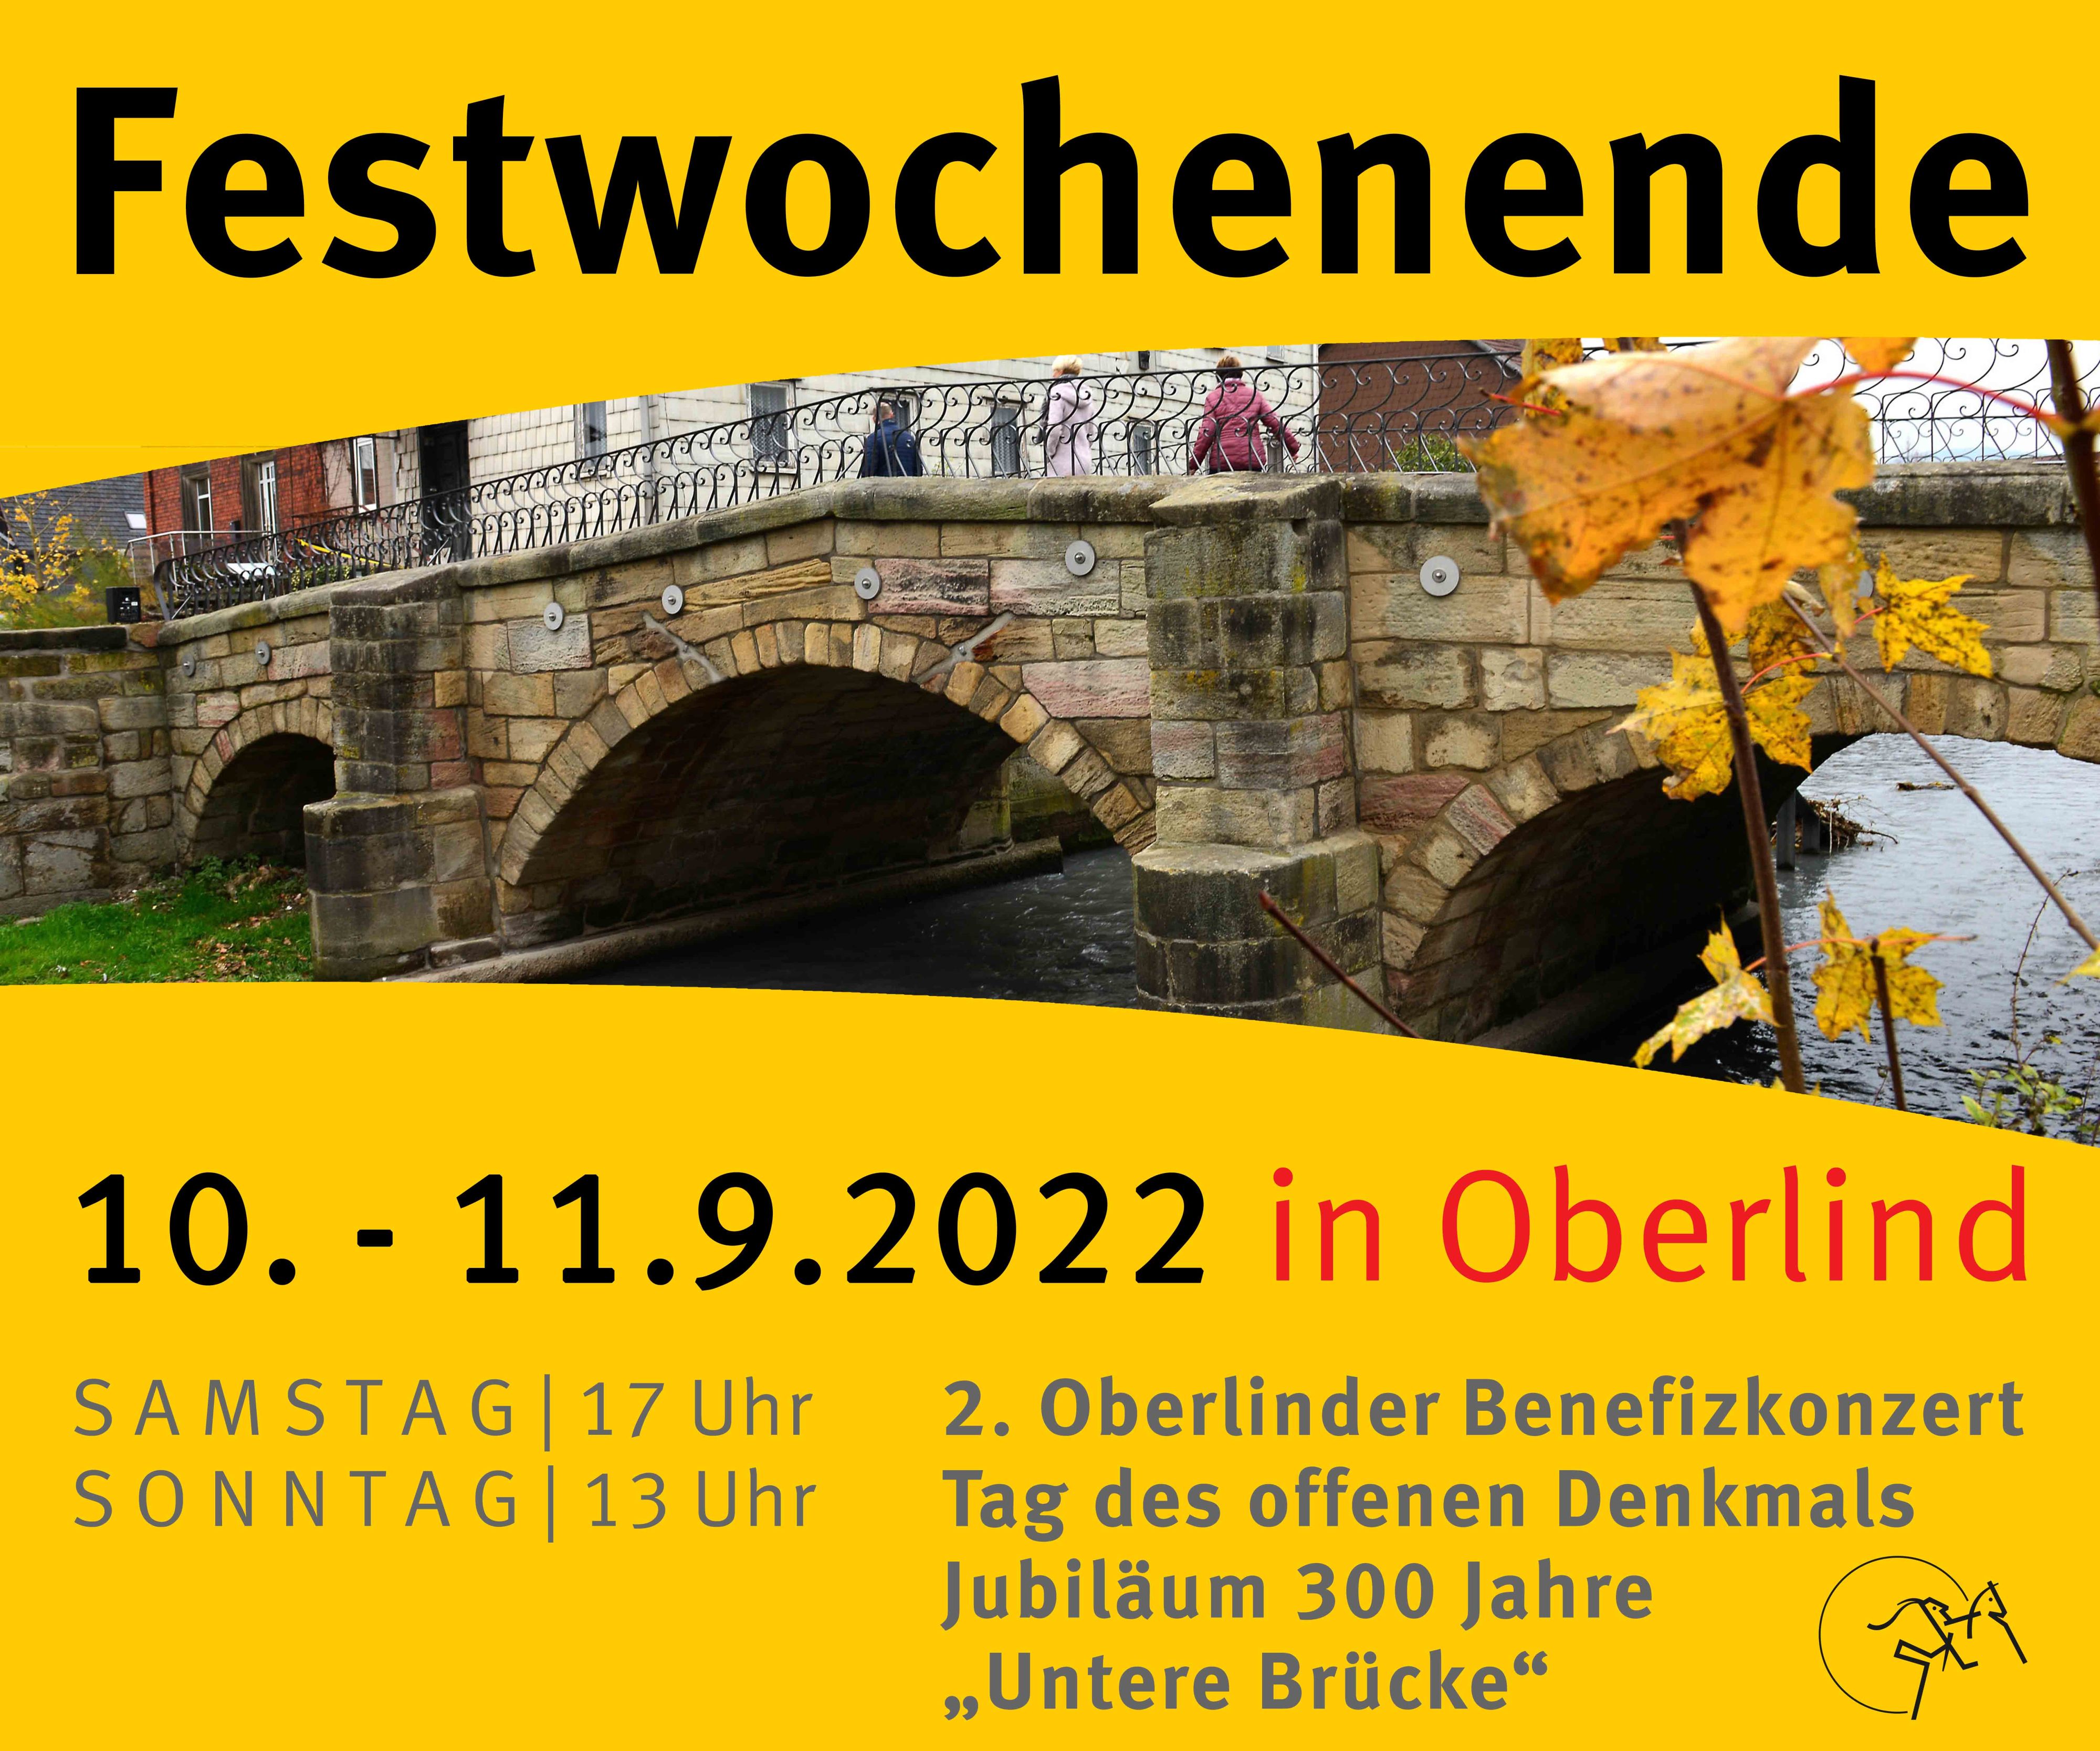 Eine gelbe Grafik für das Festwochenende in Oberlind. In der Mitte ist eine Brücke zu sehen. Unten steht: 2. Oberlinder Benefizkonzert, Tag des offenen Denkmals, Jubiläum 300 Jahre Untere Brücke.